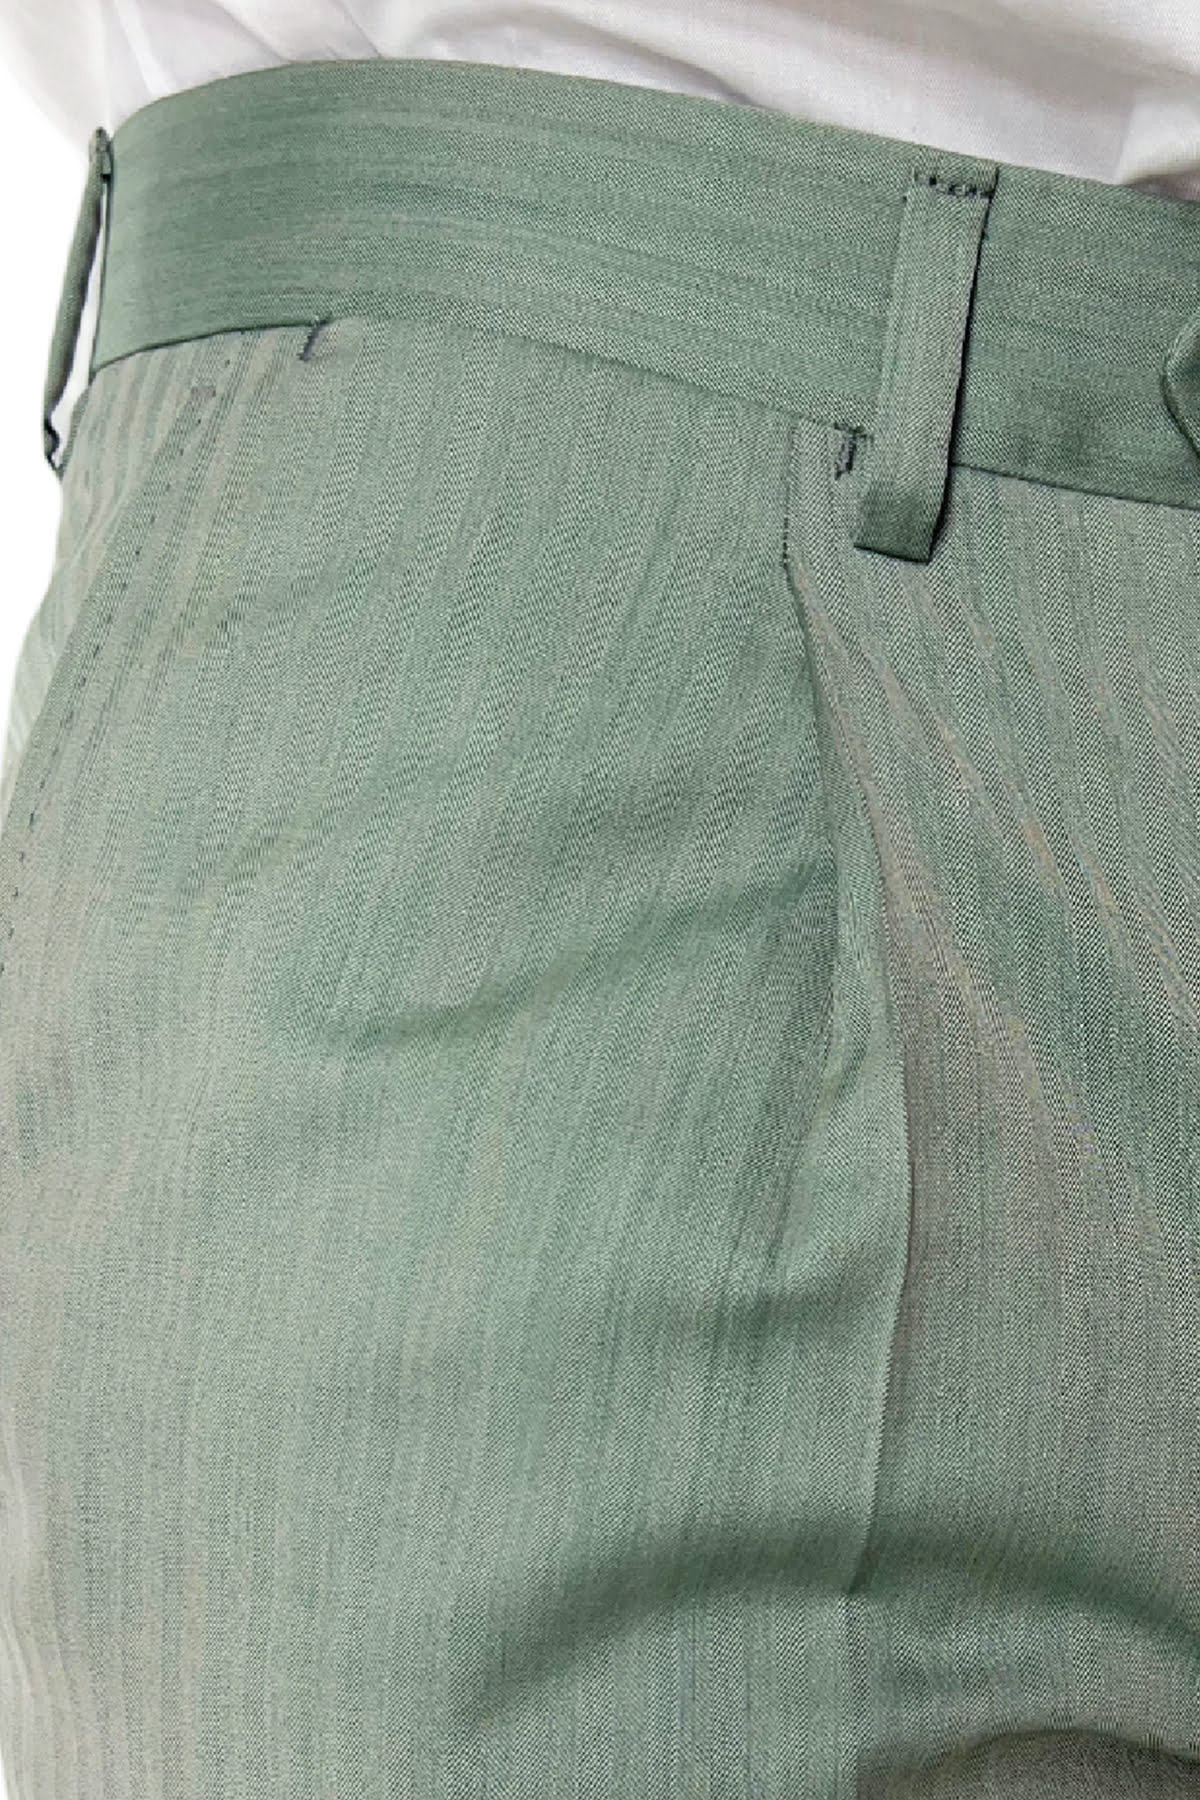 Pantalone uomo verde Solaro in fresco lana e seta Holland & Sherry vita alta con una pinces e risvolto 4cm